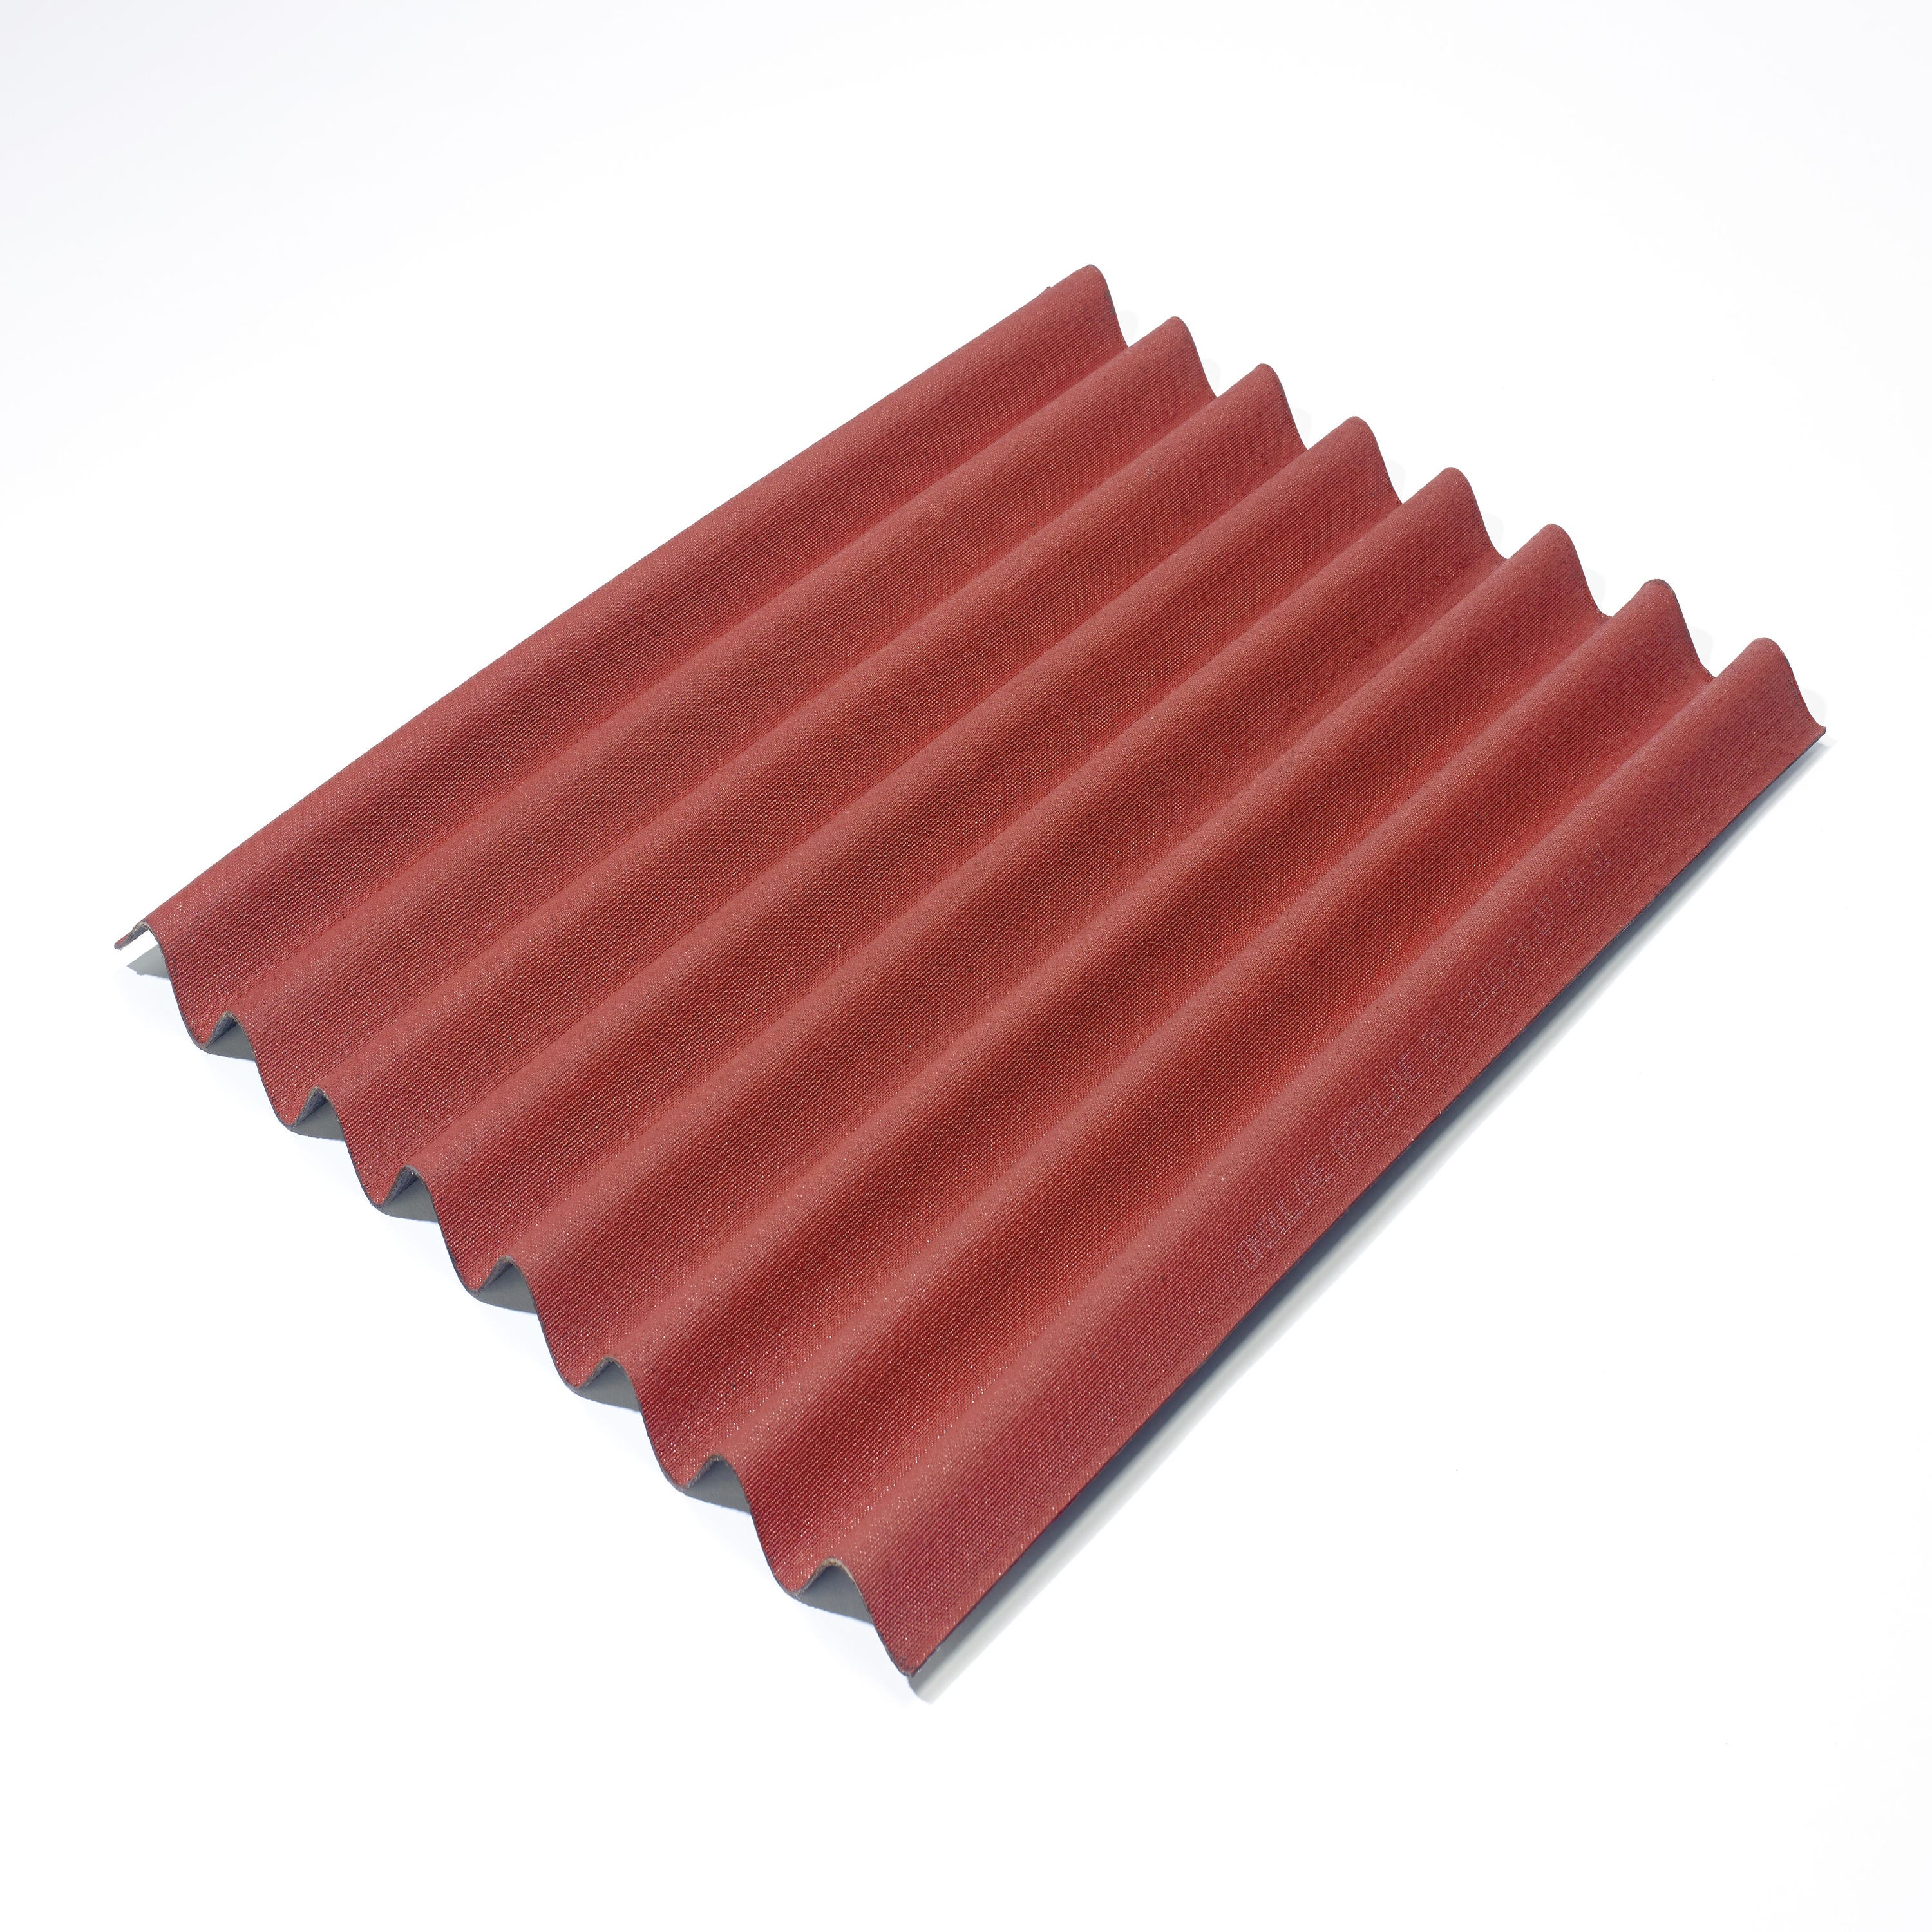 Piastra Asfalto Esterno ONDULINE Easyfix in bitume 0.81 x 2 m rosso